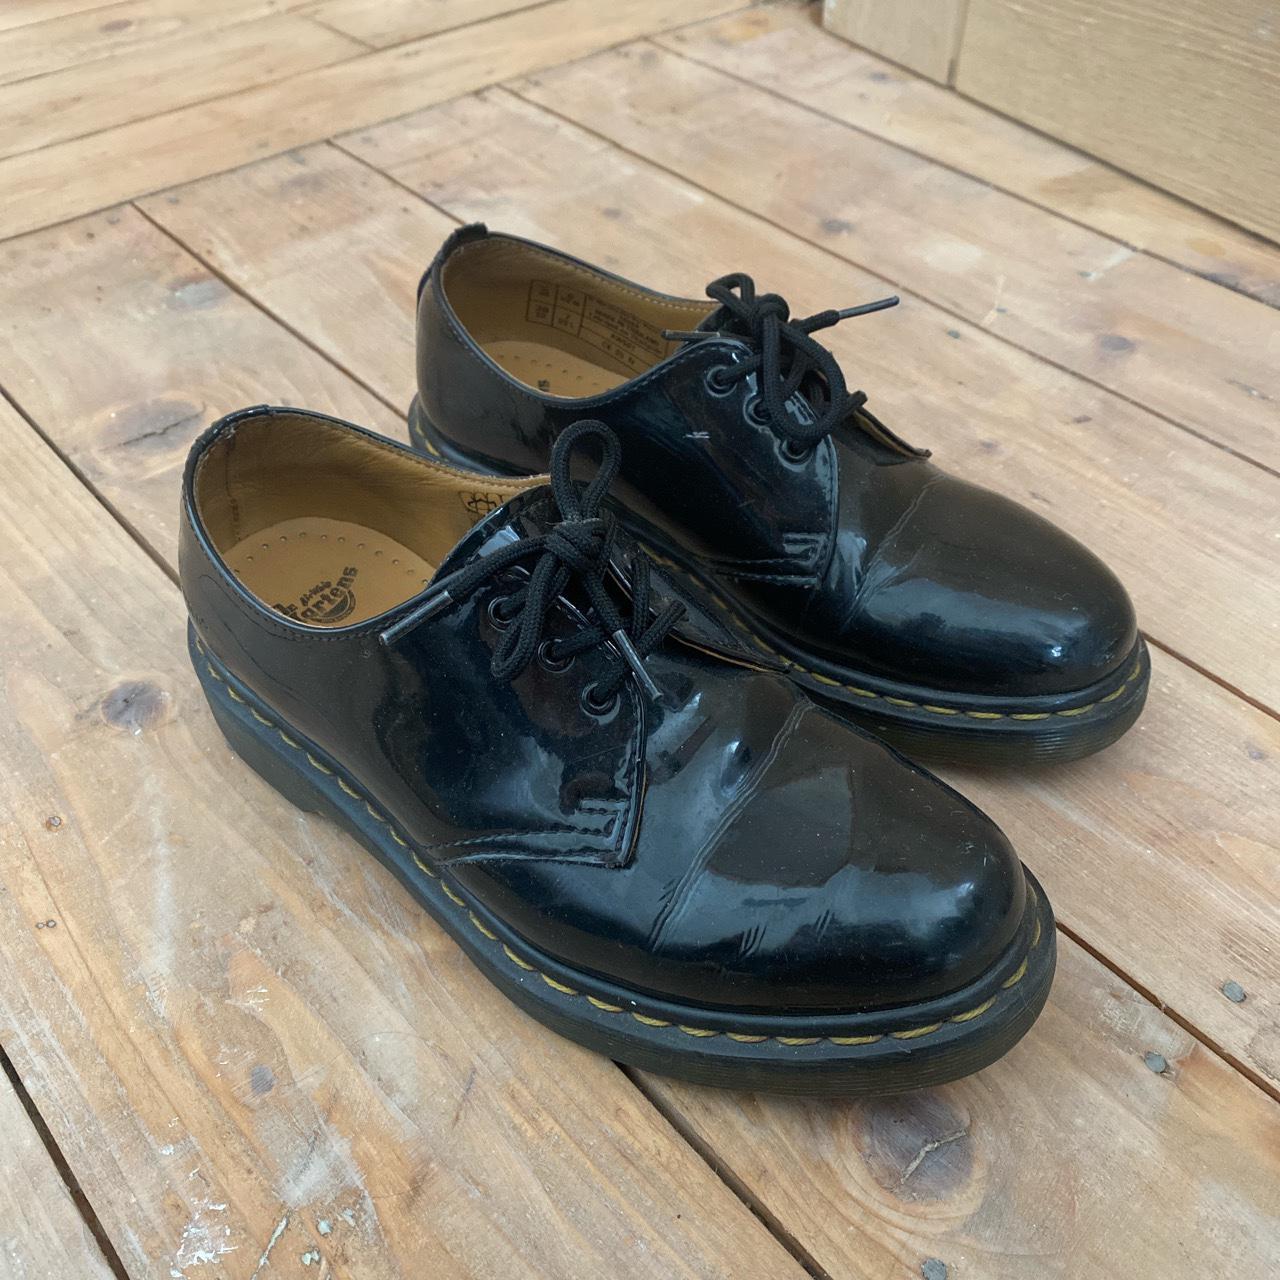 Dr Marten 1461 Black Patent Leather Shoes size 5 /... - Depop